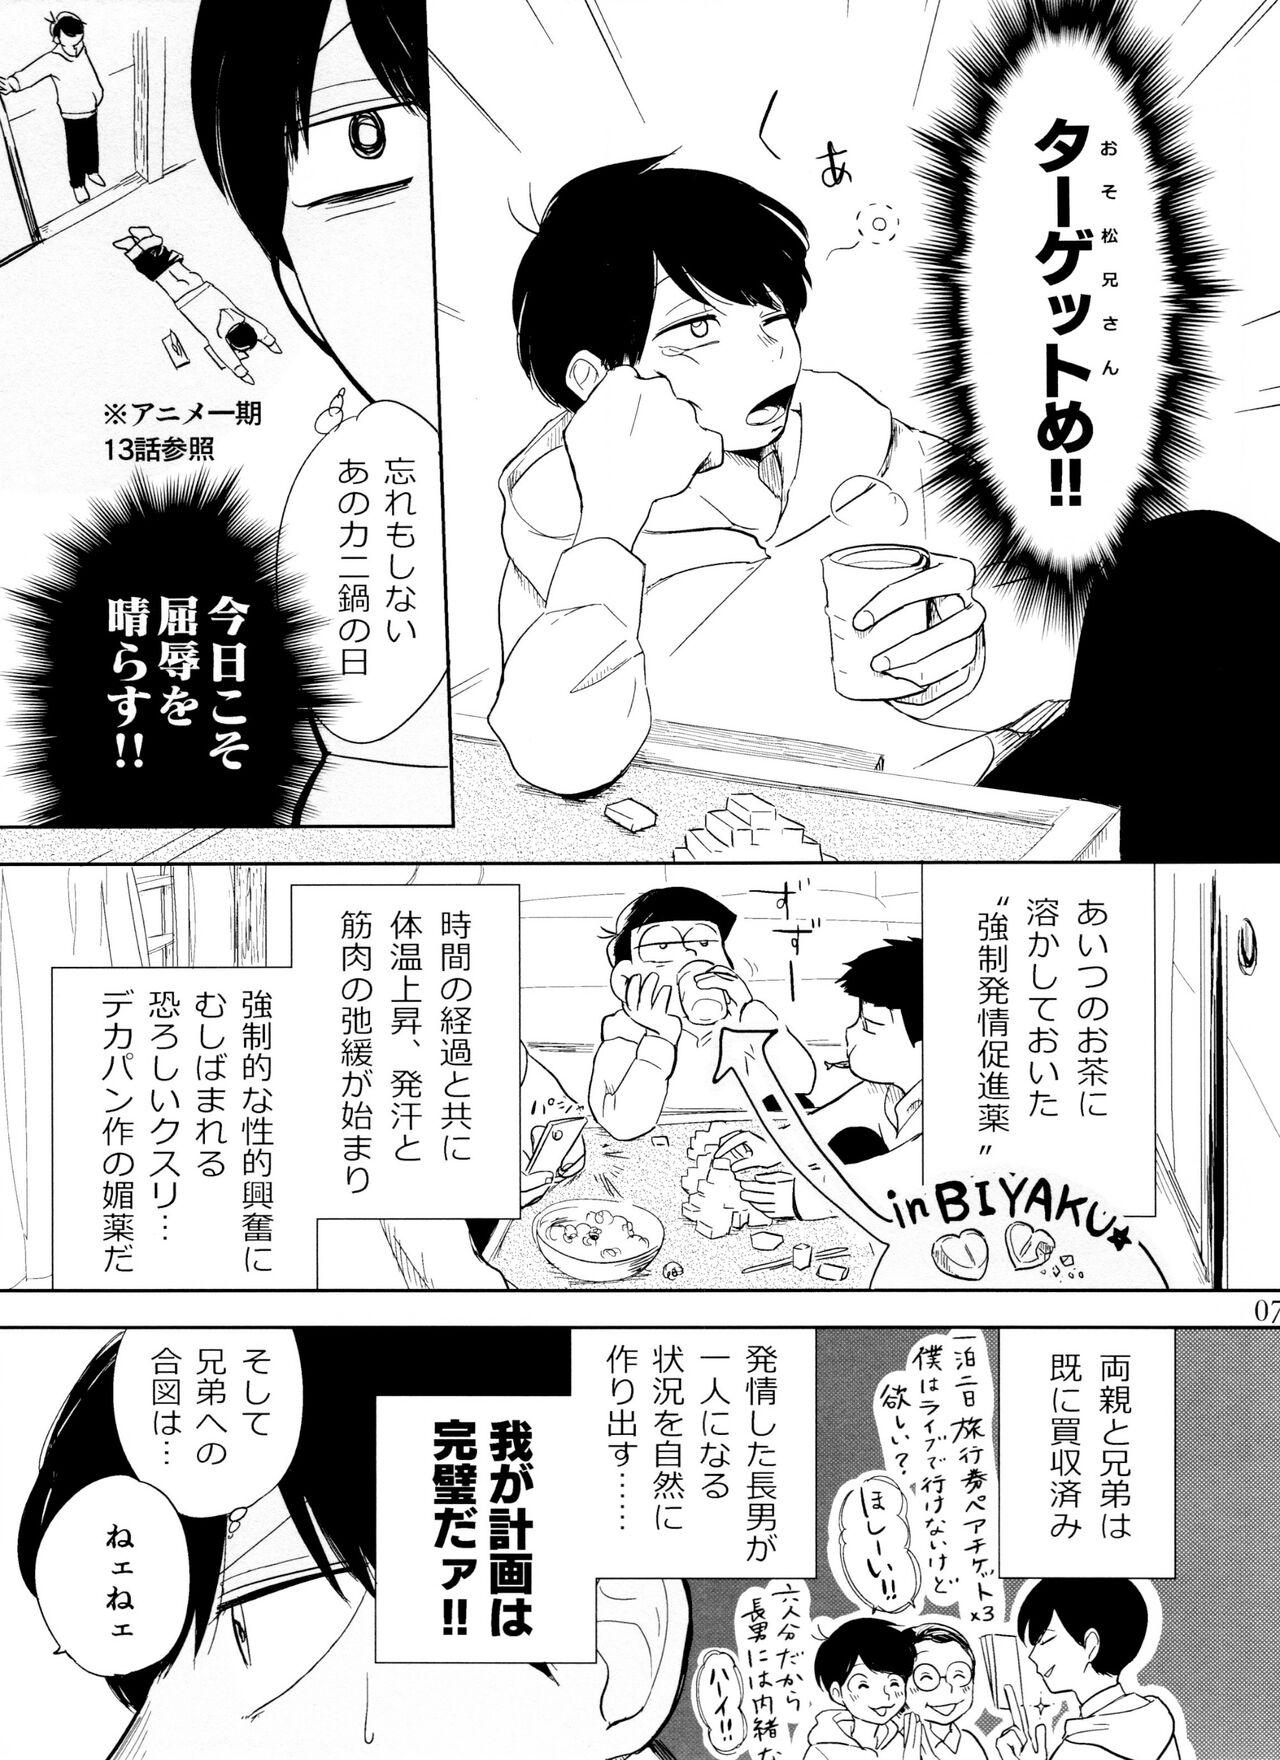 Sis Otokoshite Gedo - Osomatsu-san Strip - Page 7